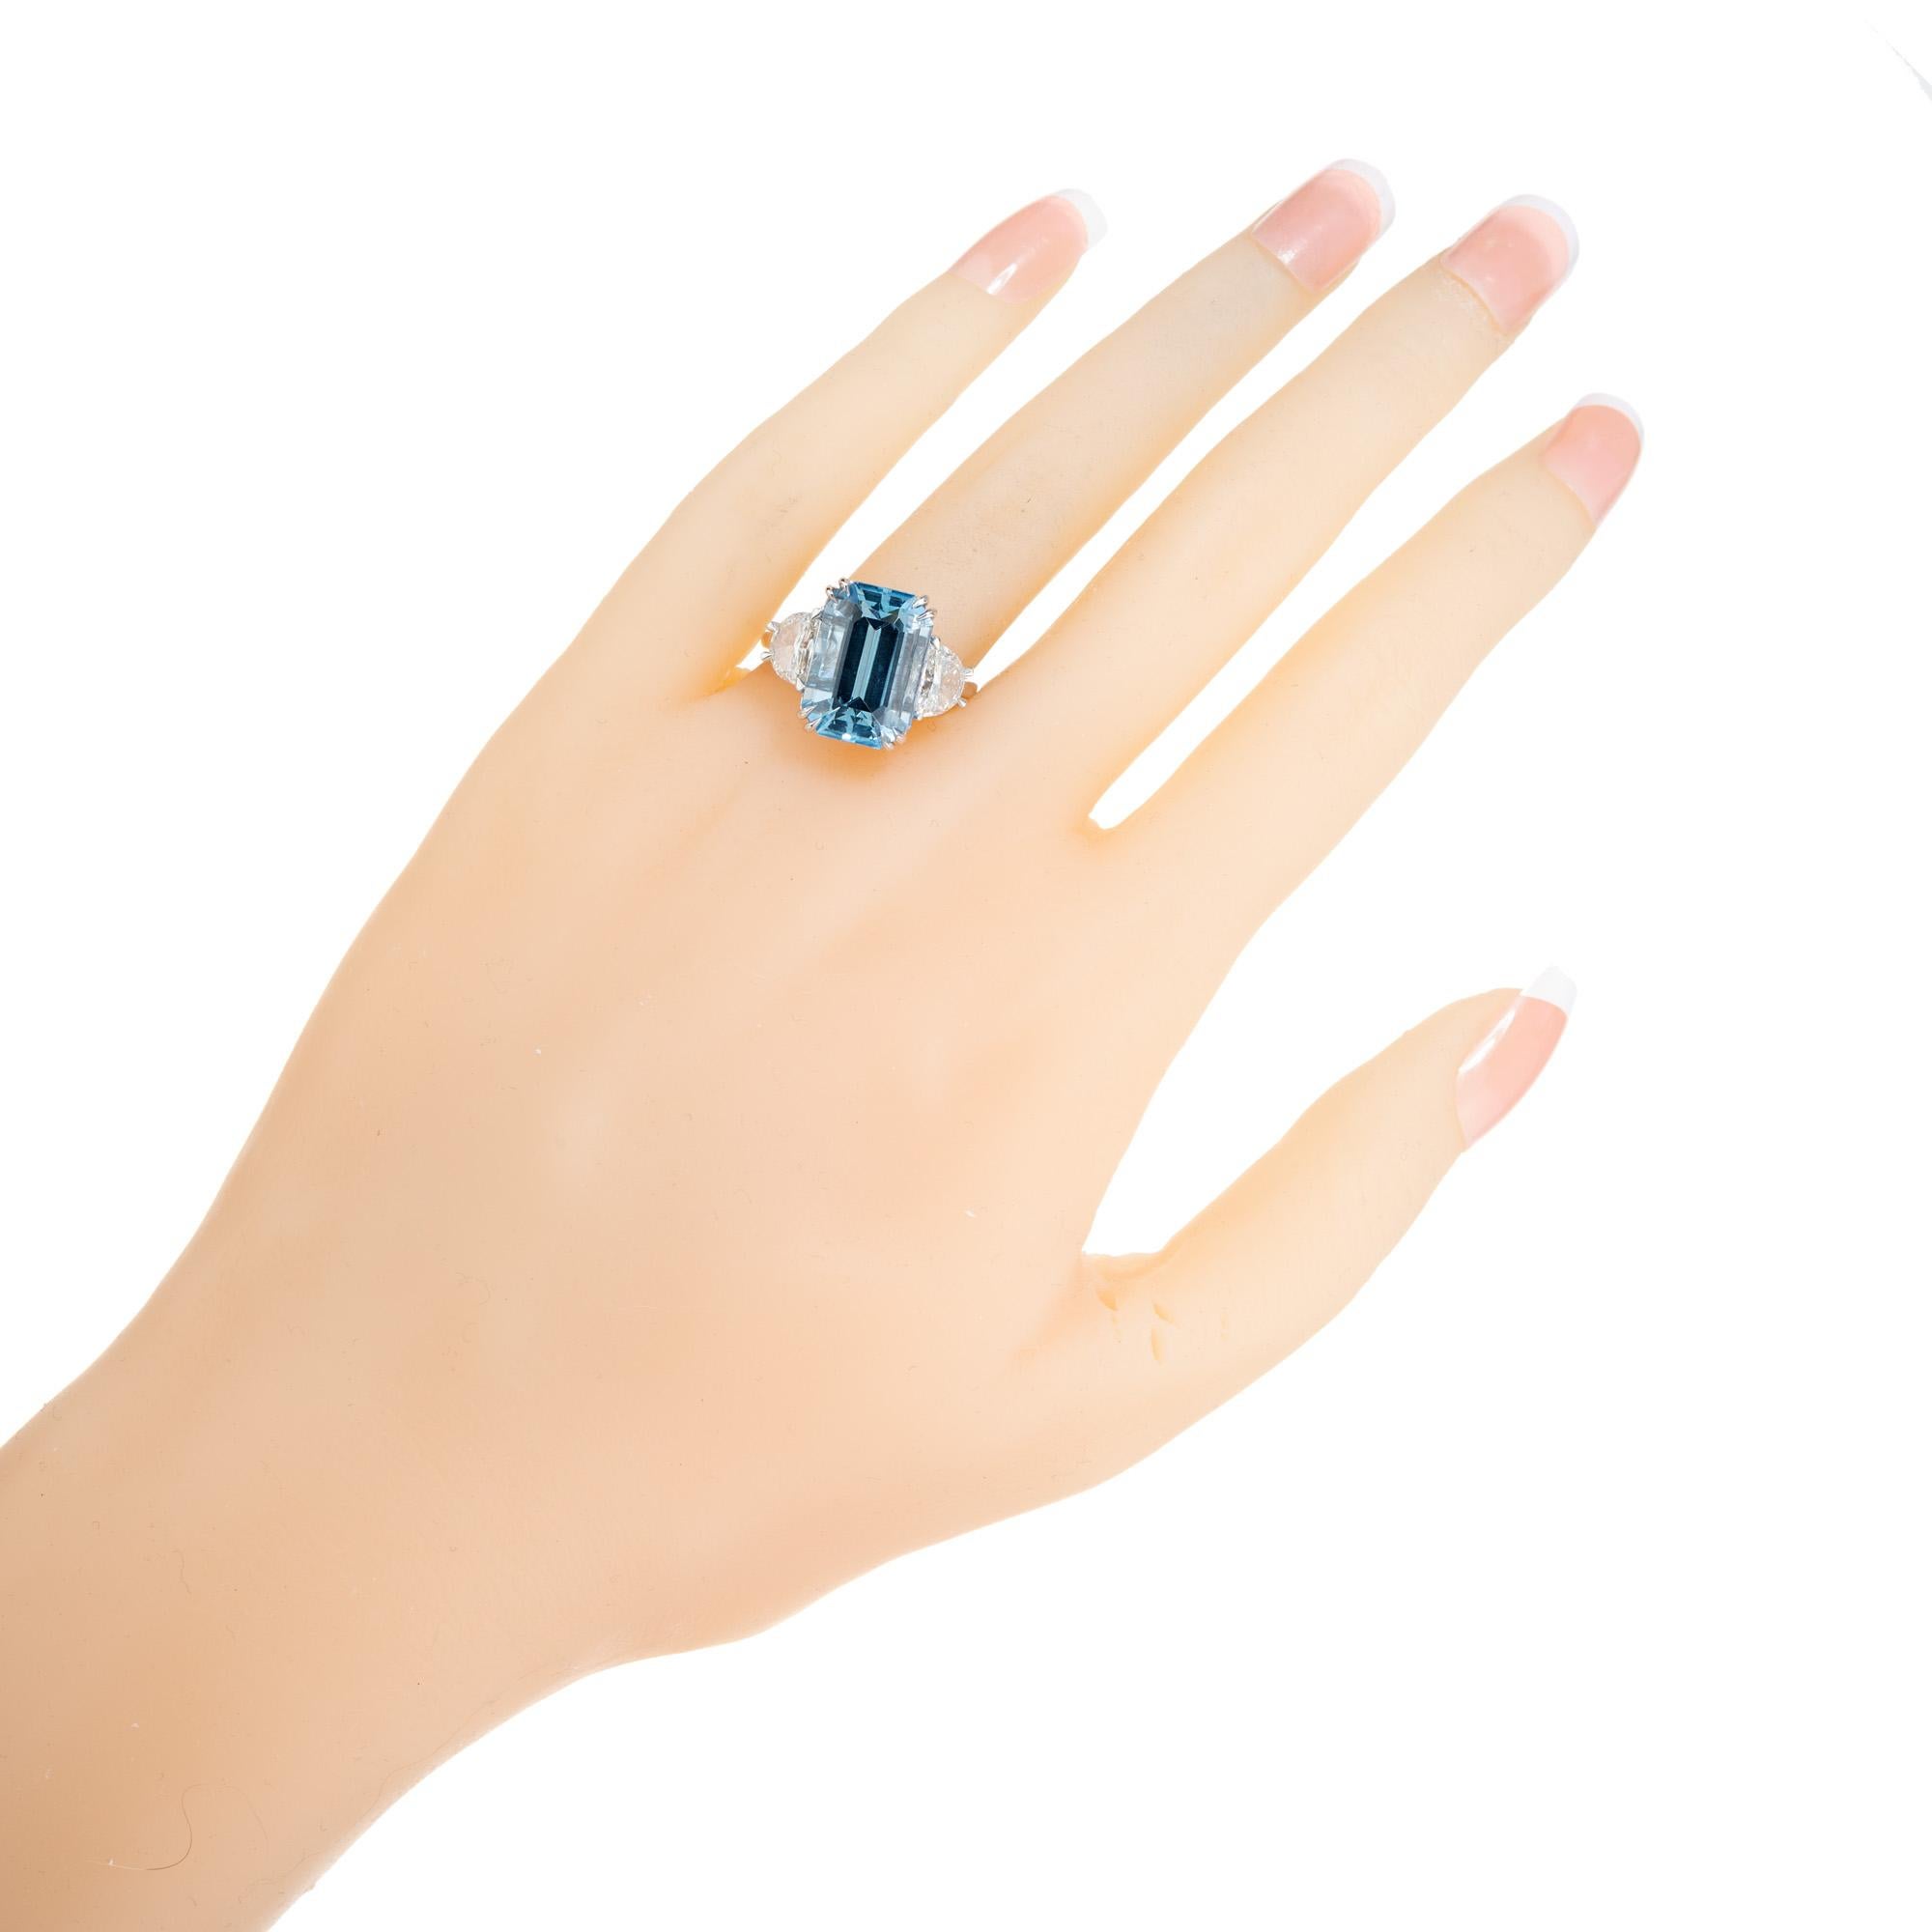  Peter Suchy 7.44 Carat Aqua Diamond Platinum Three-Stone Engagement Ring For Sale 2